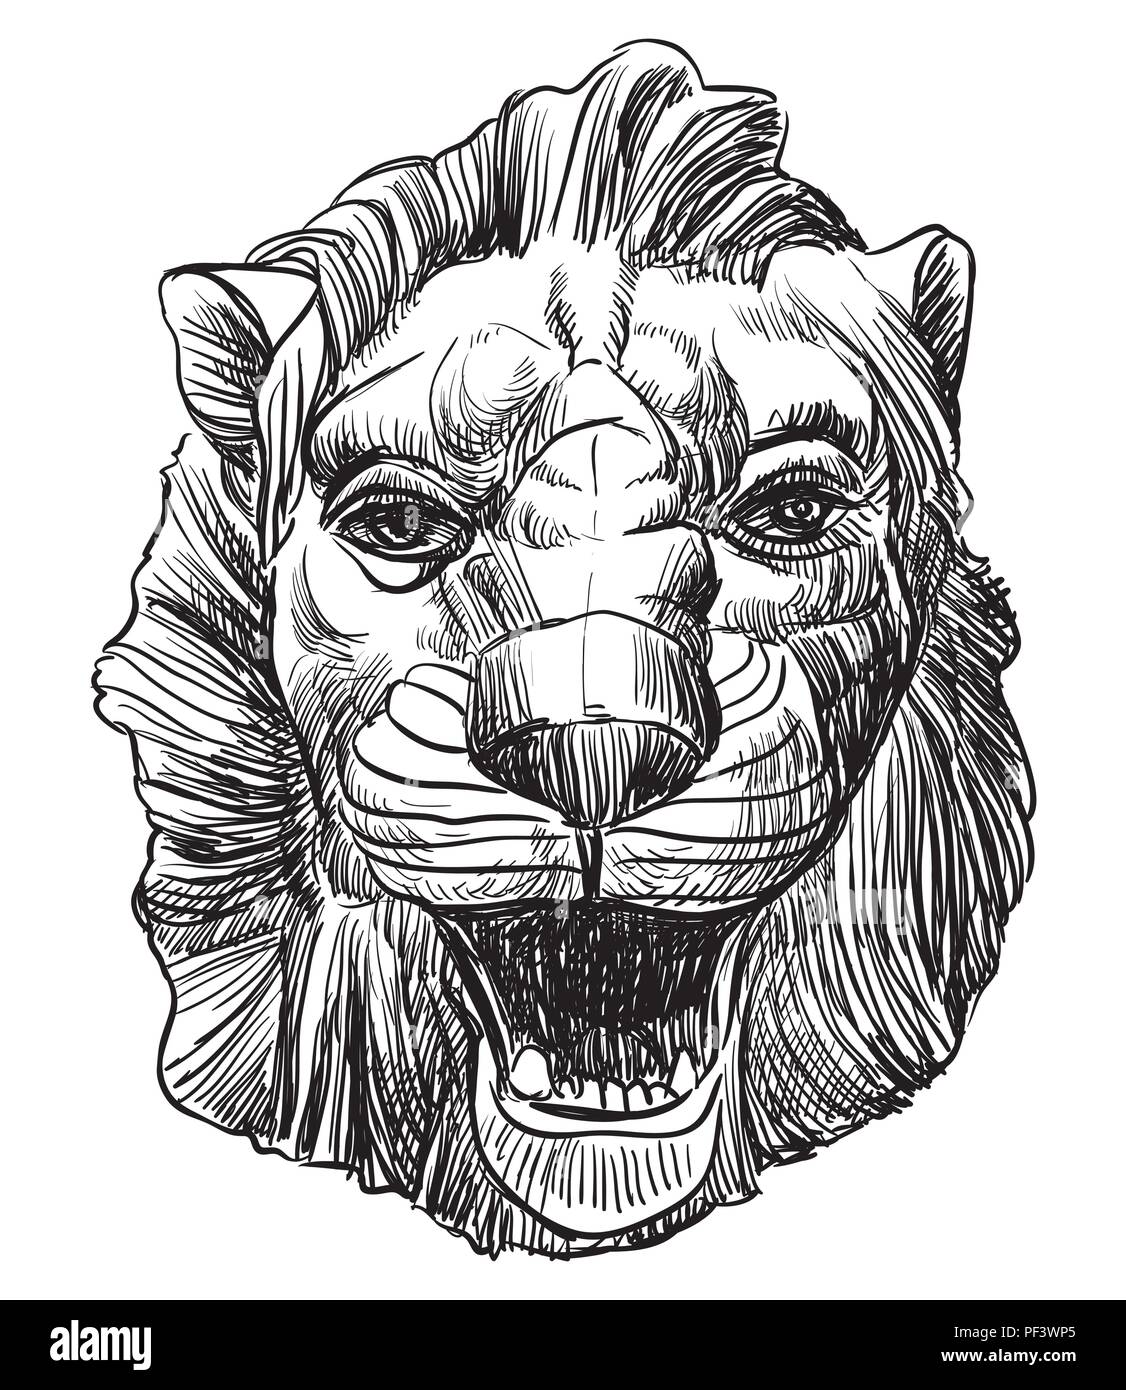 Antico rilievo, scultura in forma di una testa di leone, il vettore del disegno a mano illustrazione in colore nero isolato su sfondo bianco Illustrazione Vettoriale